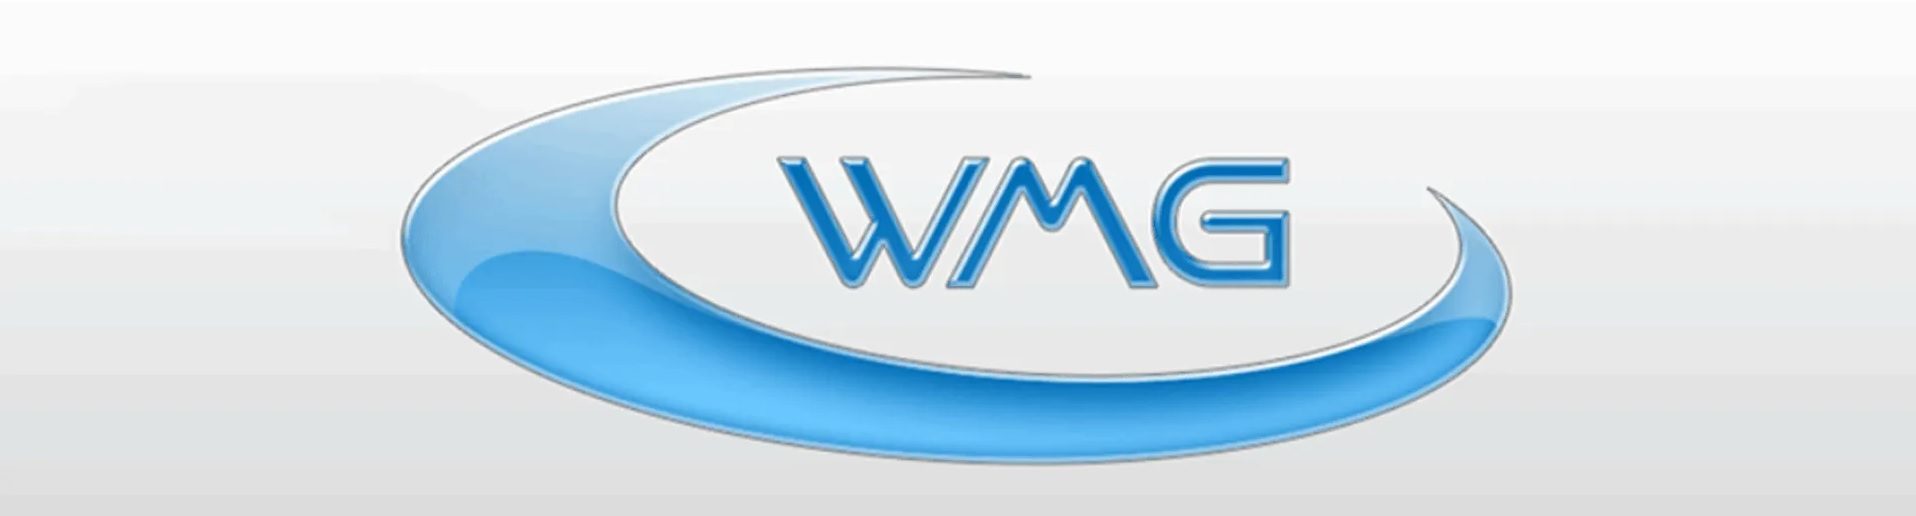 Wmg Online